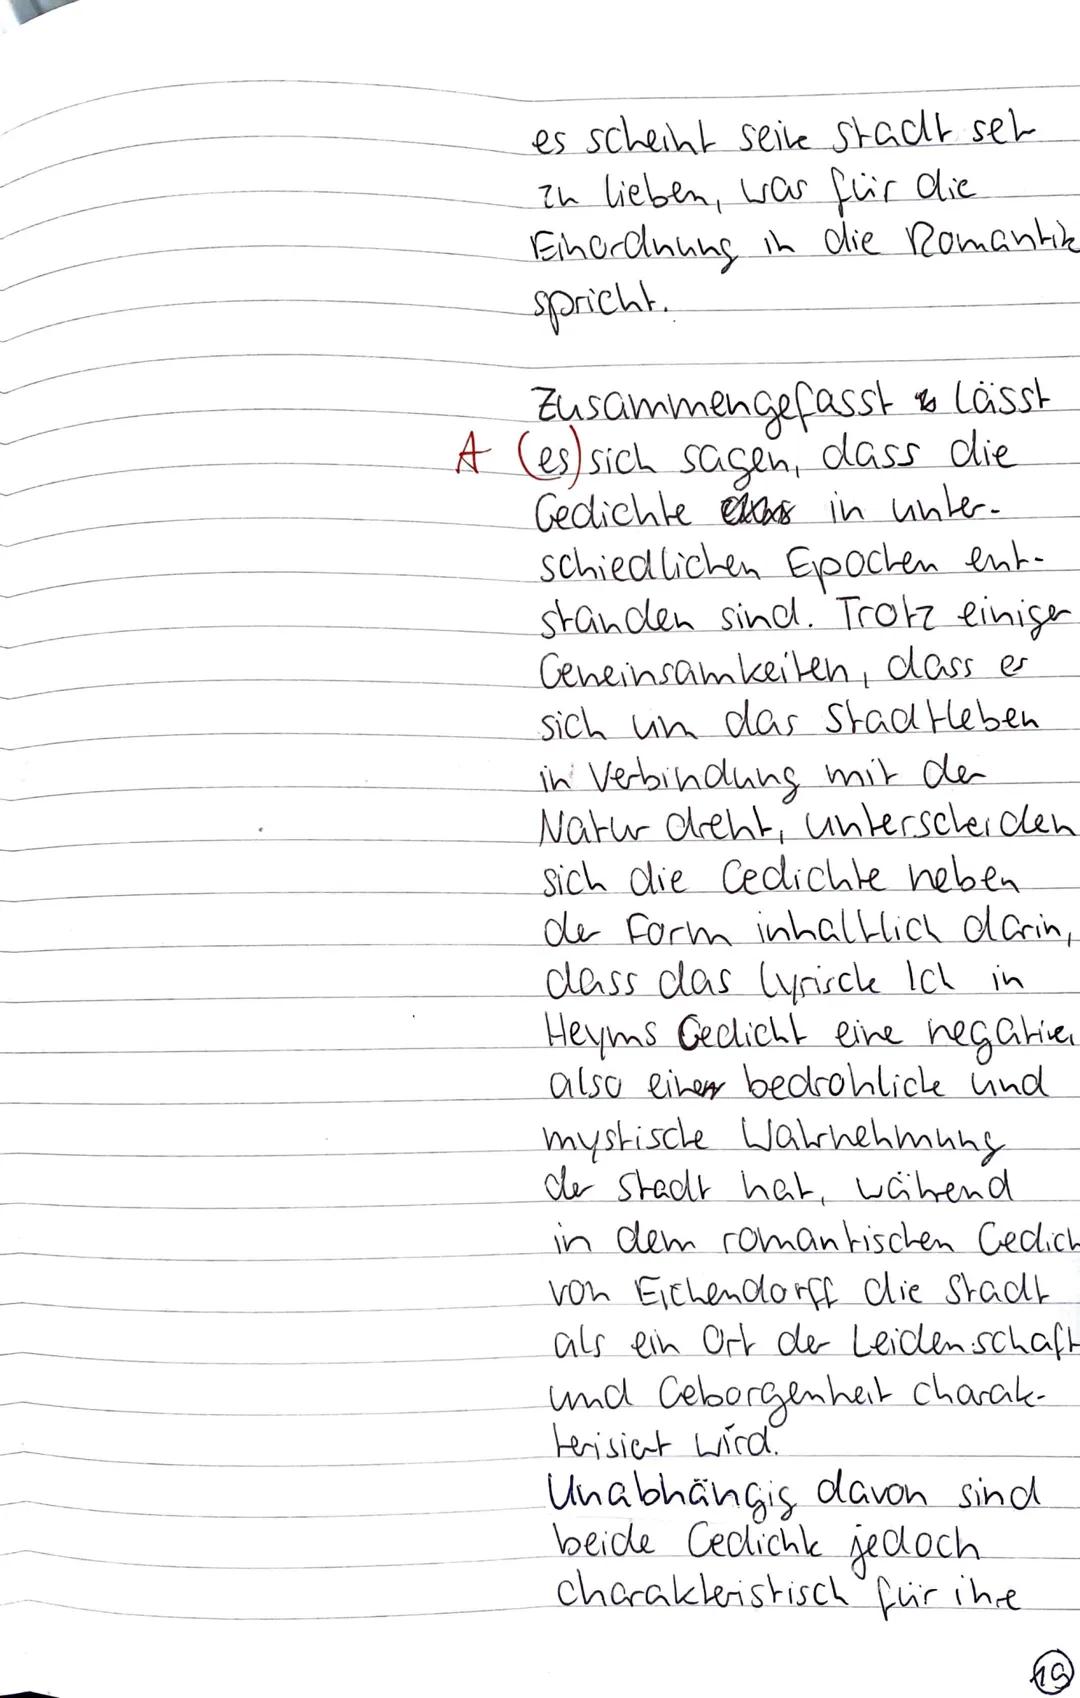 Deutsch GK 1-
Thema: Themengleiche lyrische Texte aus unterschiedlichen historischen Kontexten
Aufgabenart: Vergleichende Analyse literarisc